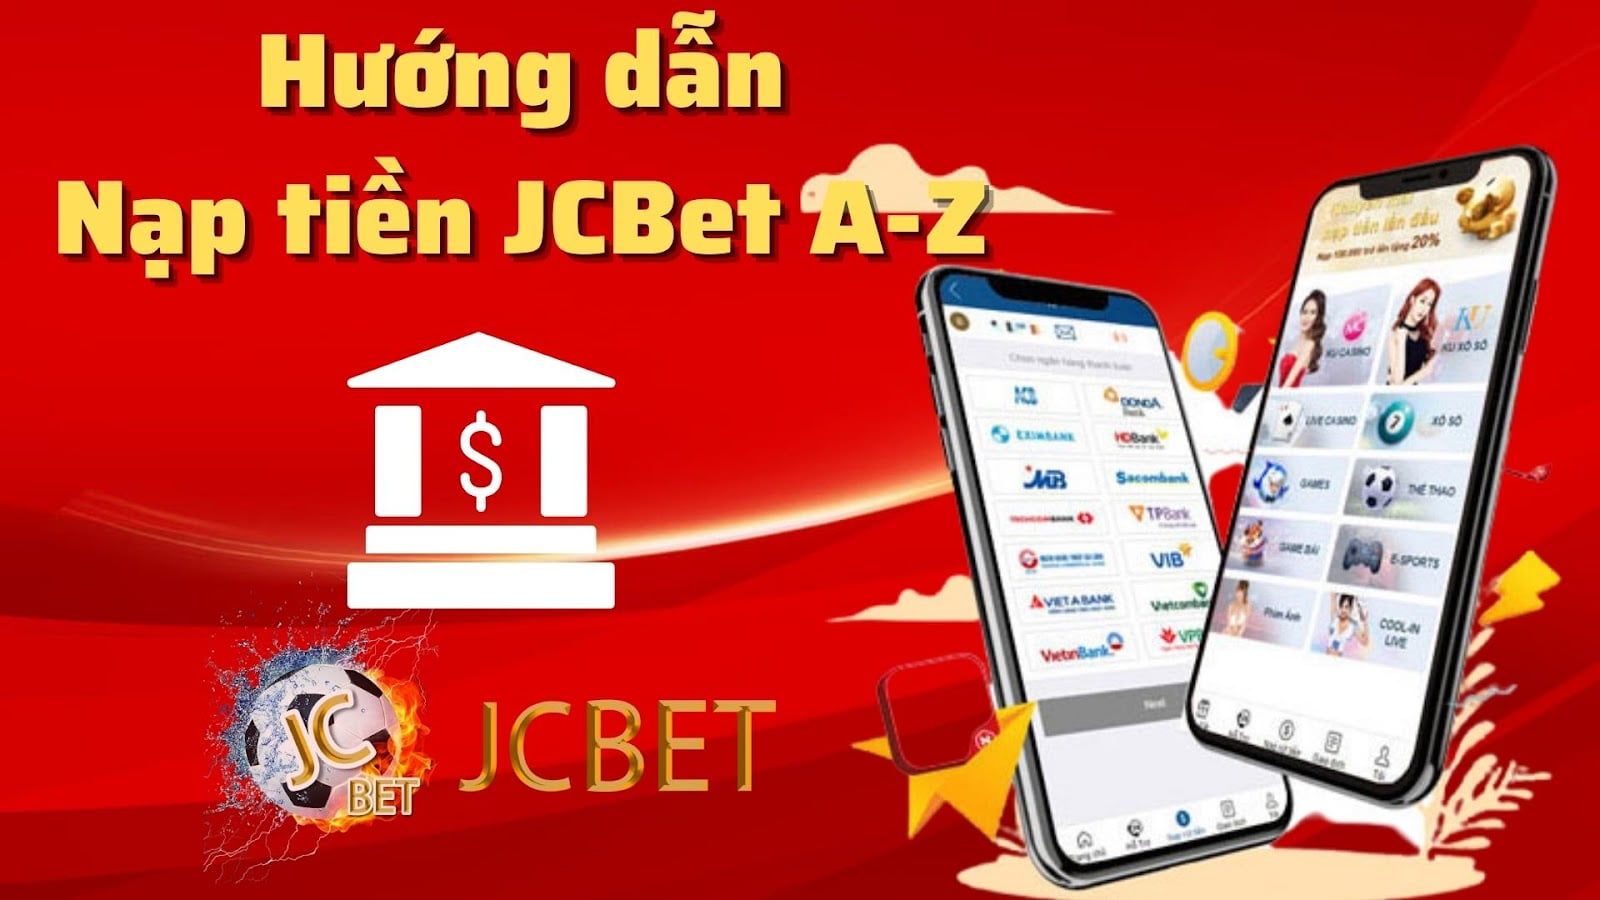 JCBET thanh toán trực tuyến